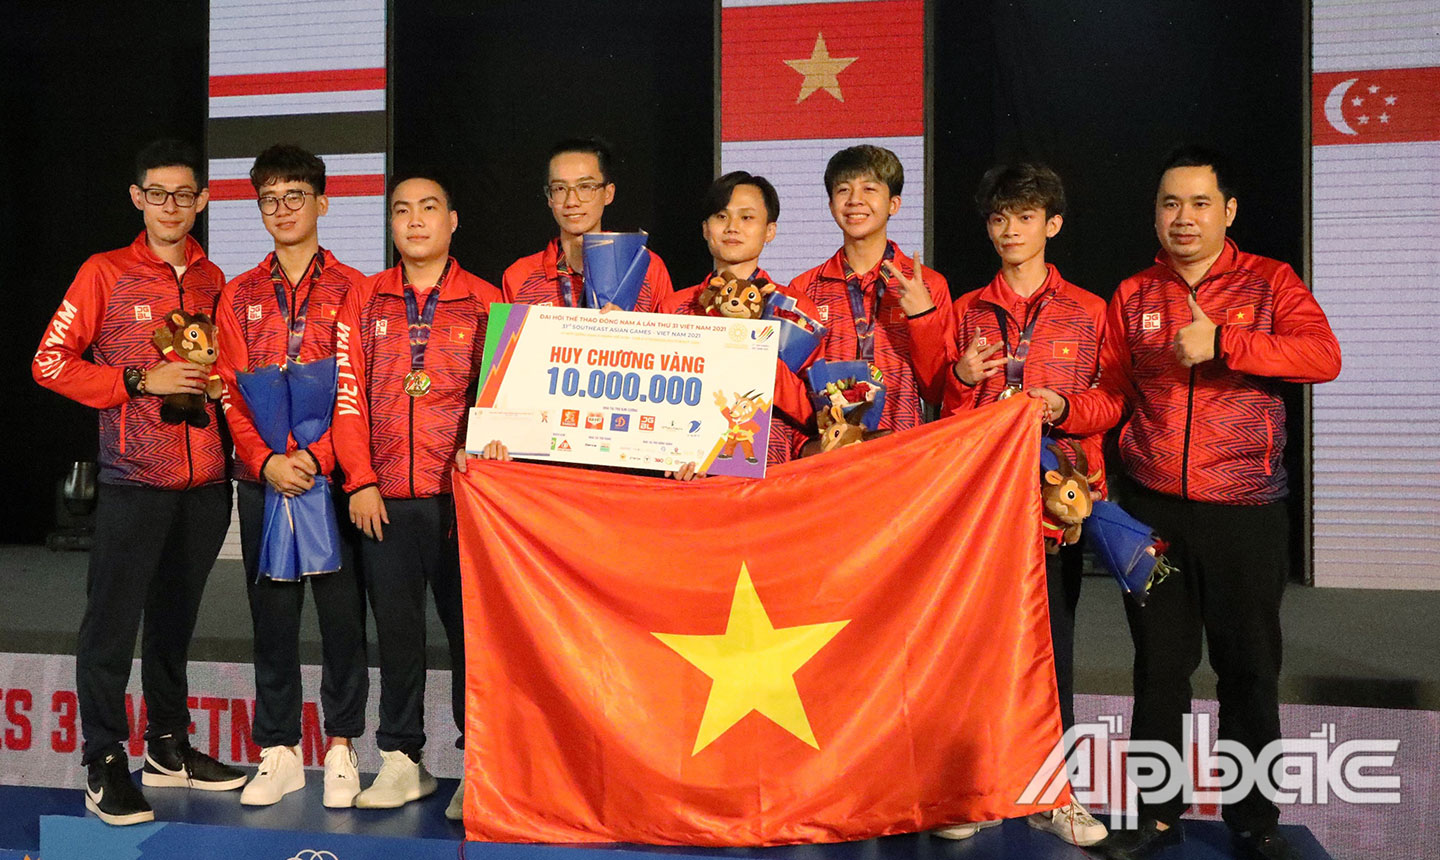 Đội tuyển E-sport Việt Nam được thưởng nóng sau khi đoạt tấm Huy chương Vàng lịch sử ở nội dung Liên minh huyền thoại: Tốc chiến.